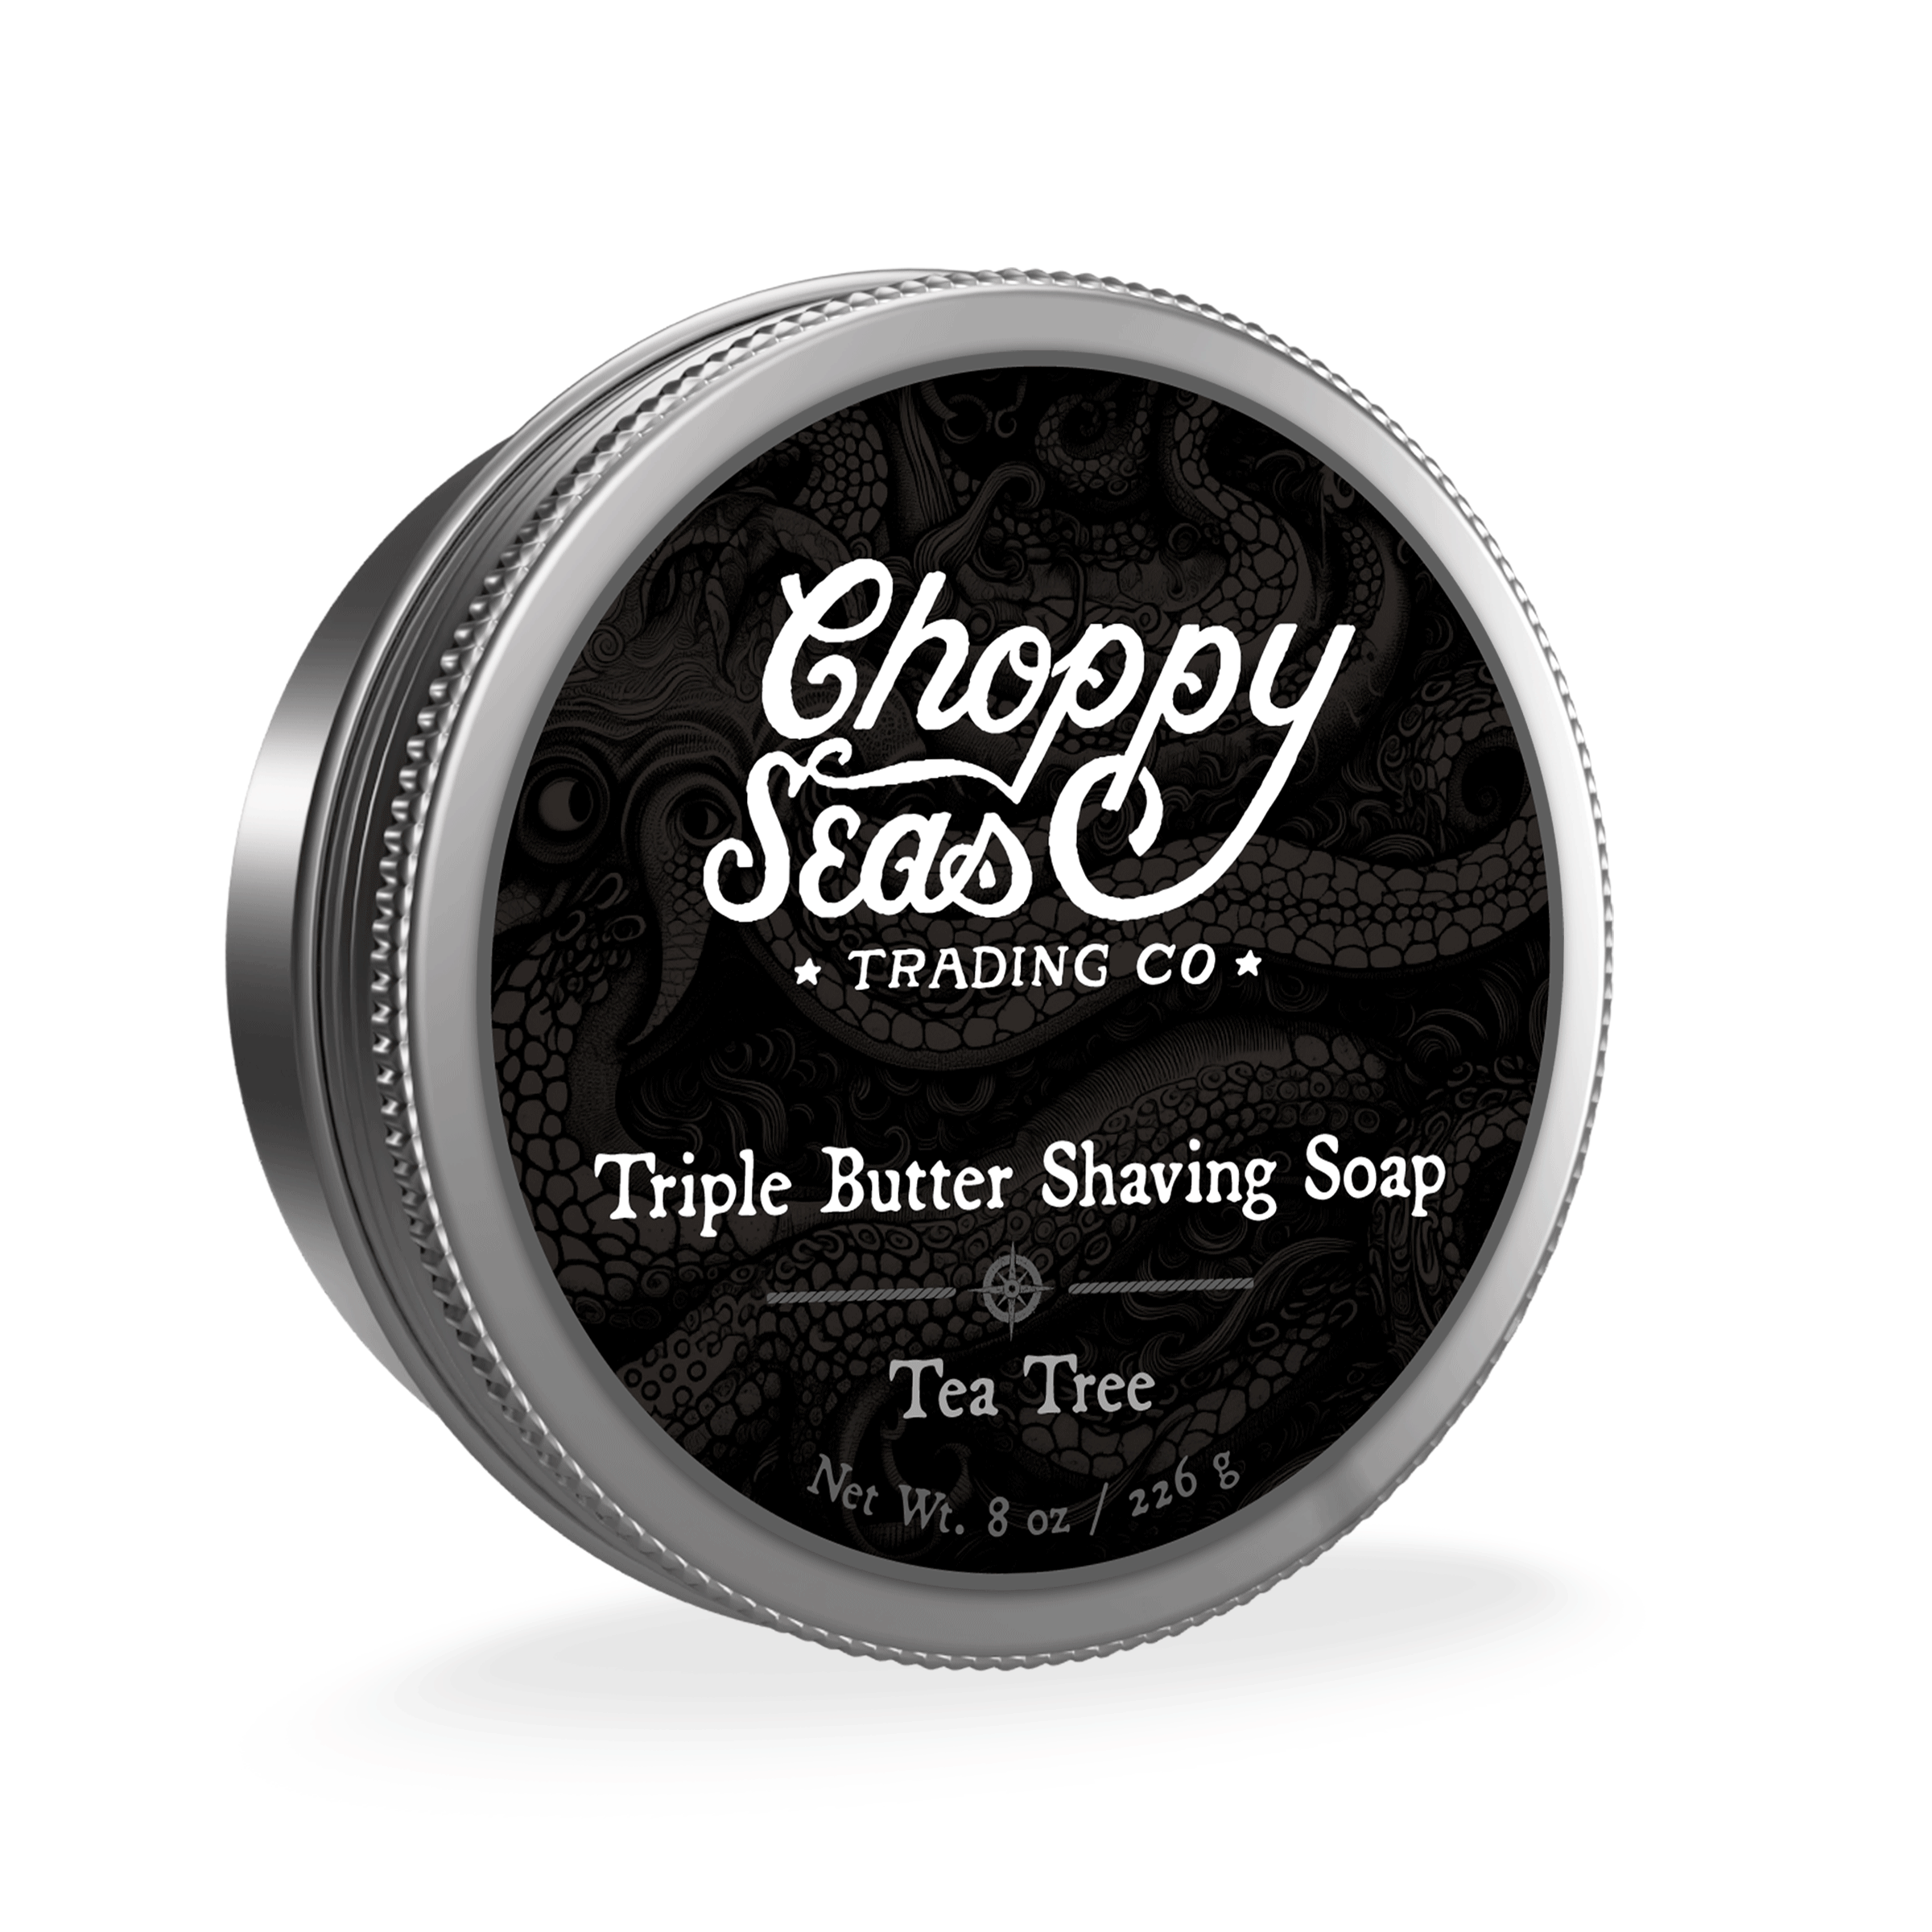 Tea Tree Triple Butter Shaving Soap